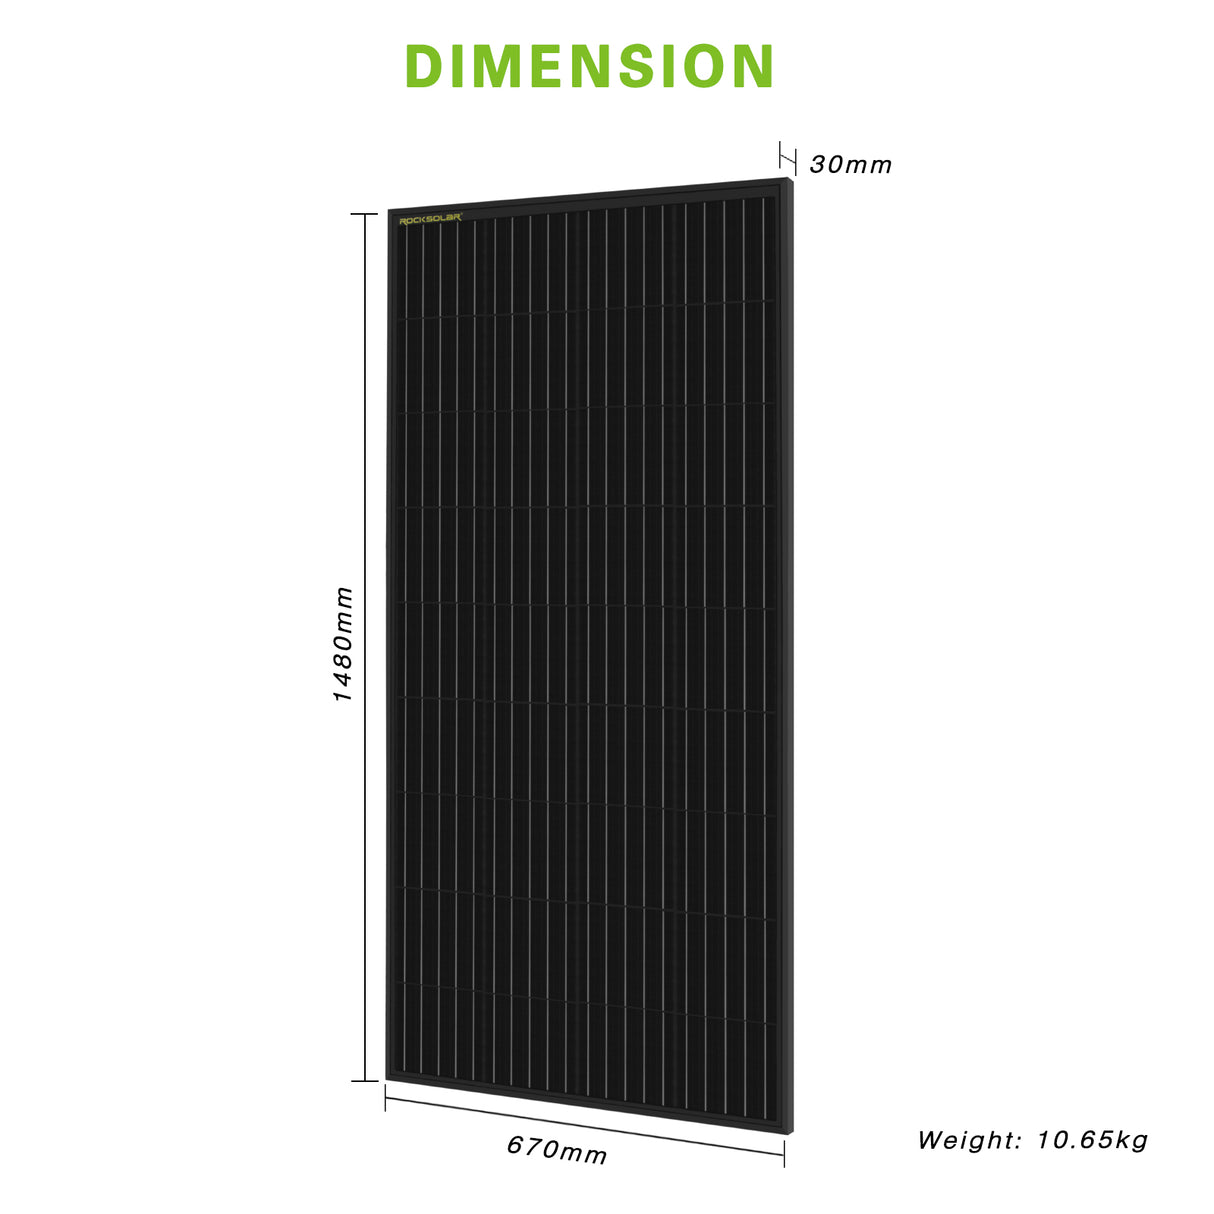 12V solar panel dimension